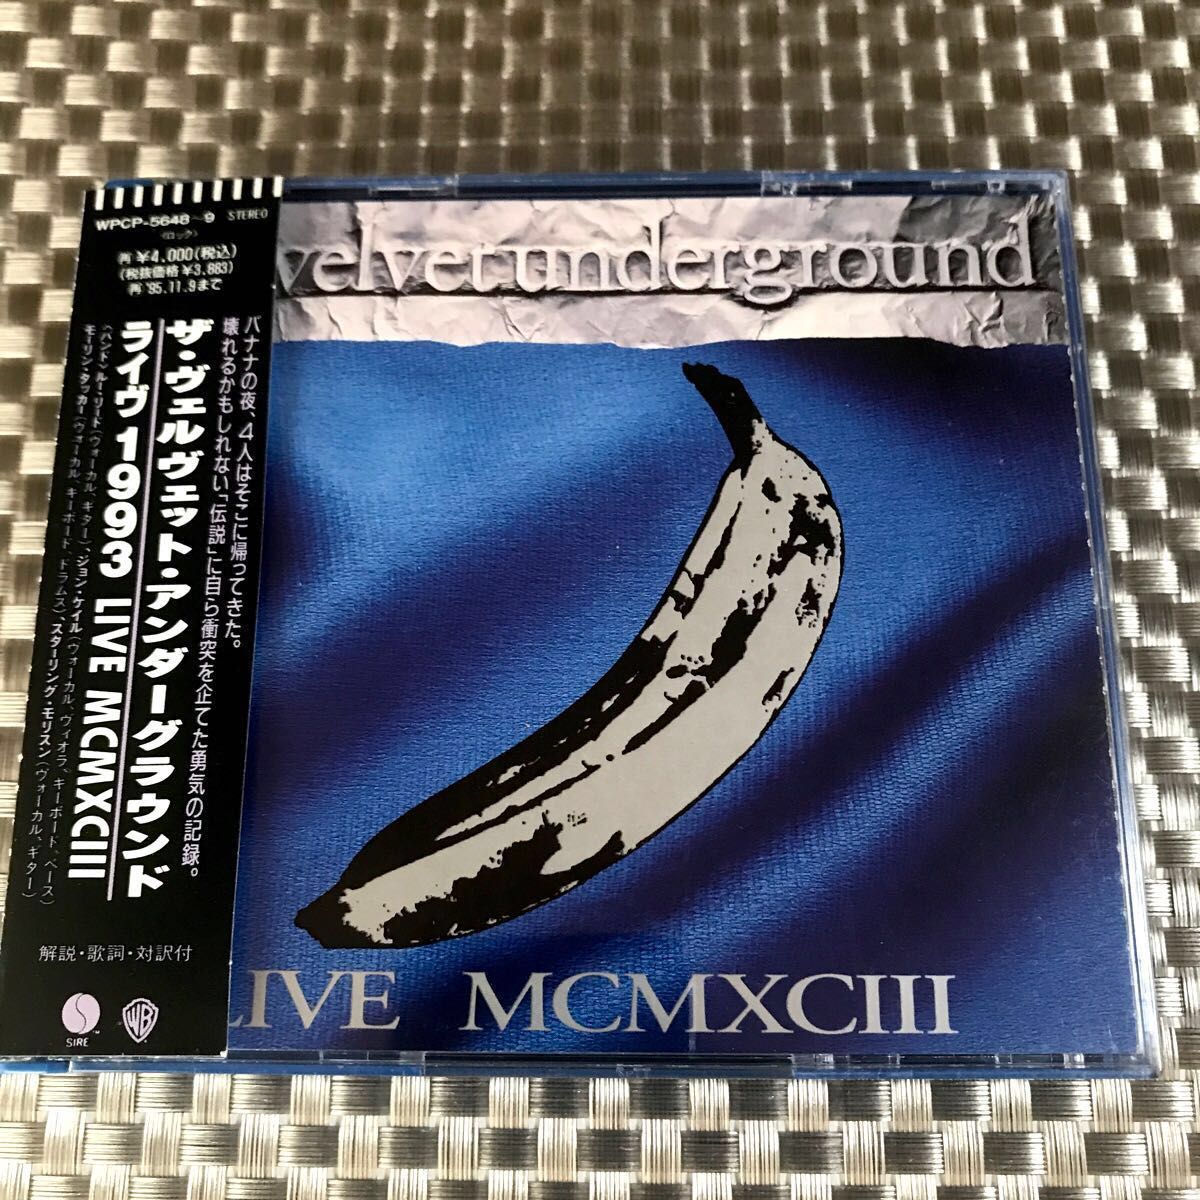 ◆ ザ ヴェルヴェット アンダーグラウンド《1993 LIVE MCMXCⅢ/再結成ライブ》◇帯付き (国内旧規格盤)